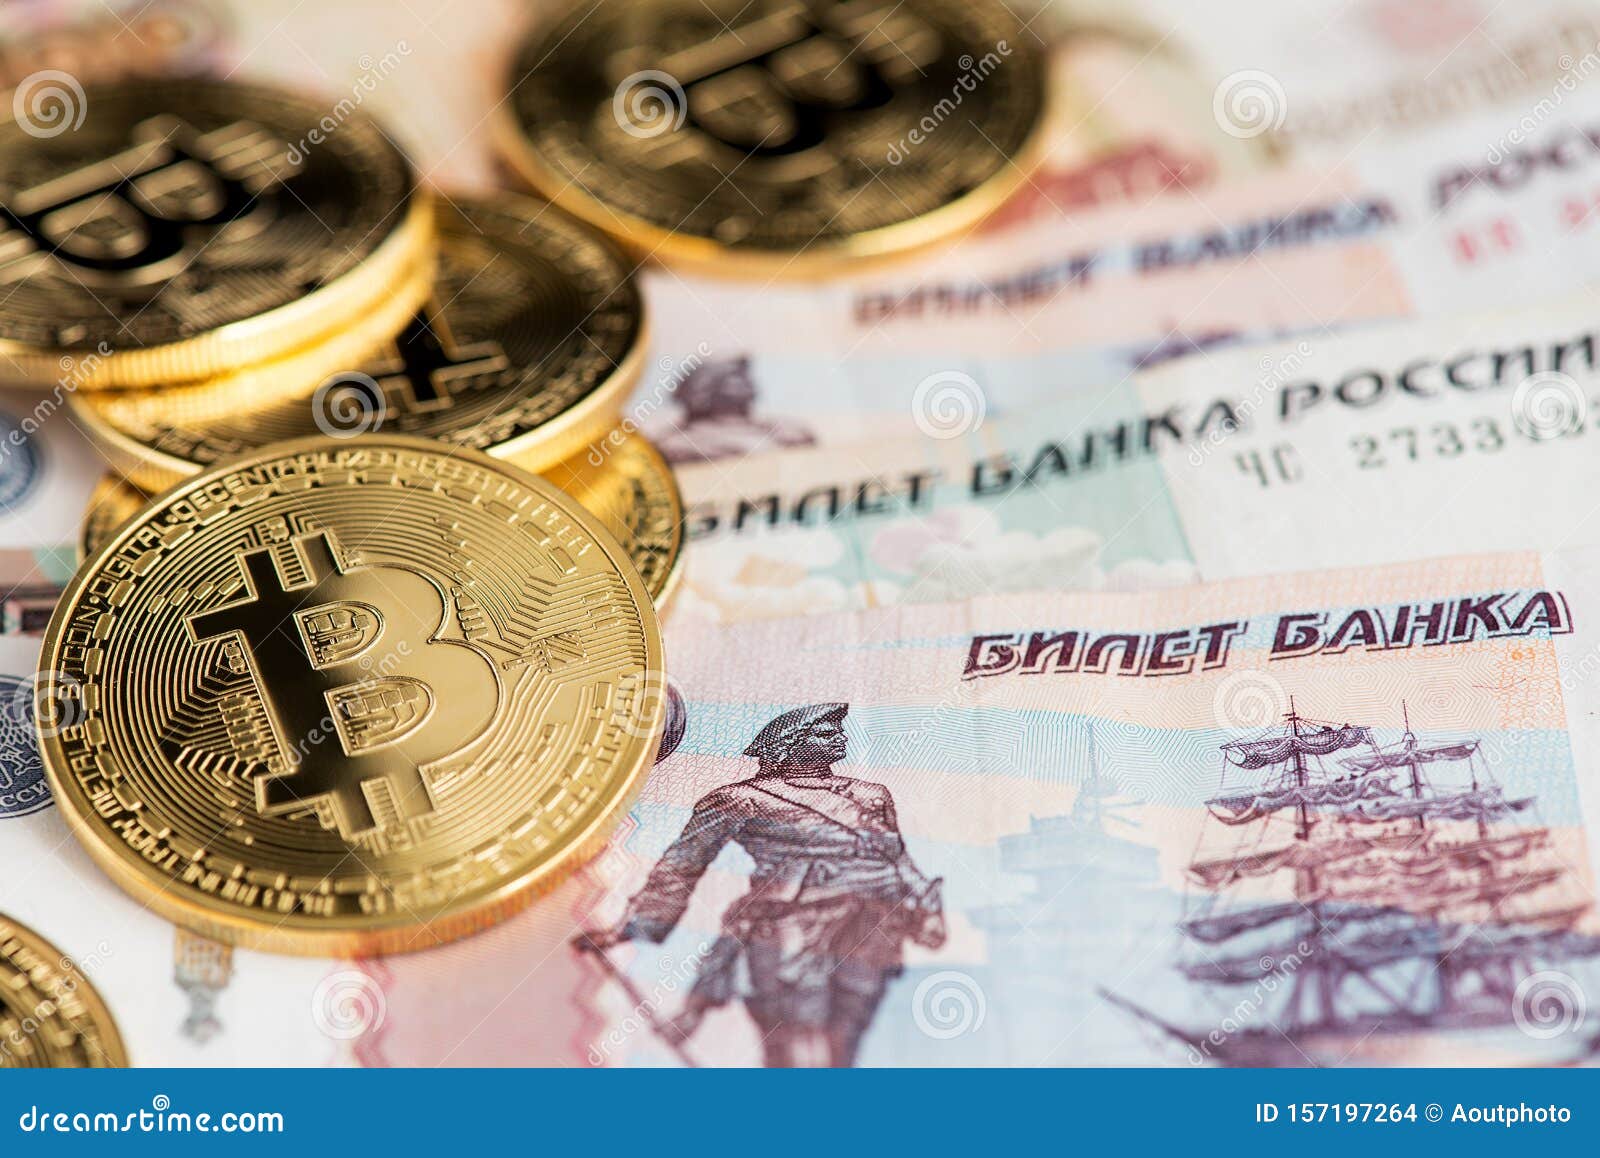 Рубли в биткоин поменять курс обмены валюты в росбанк